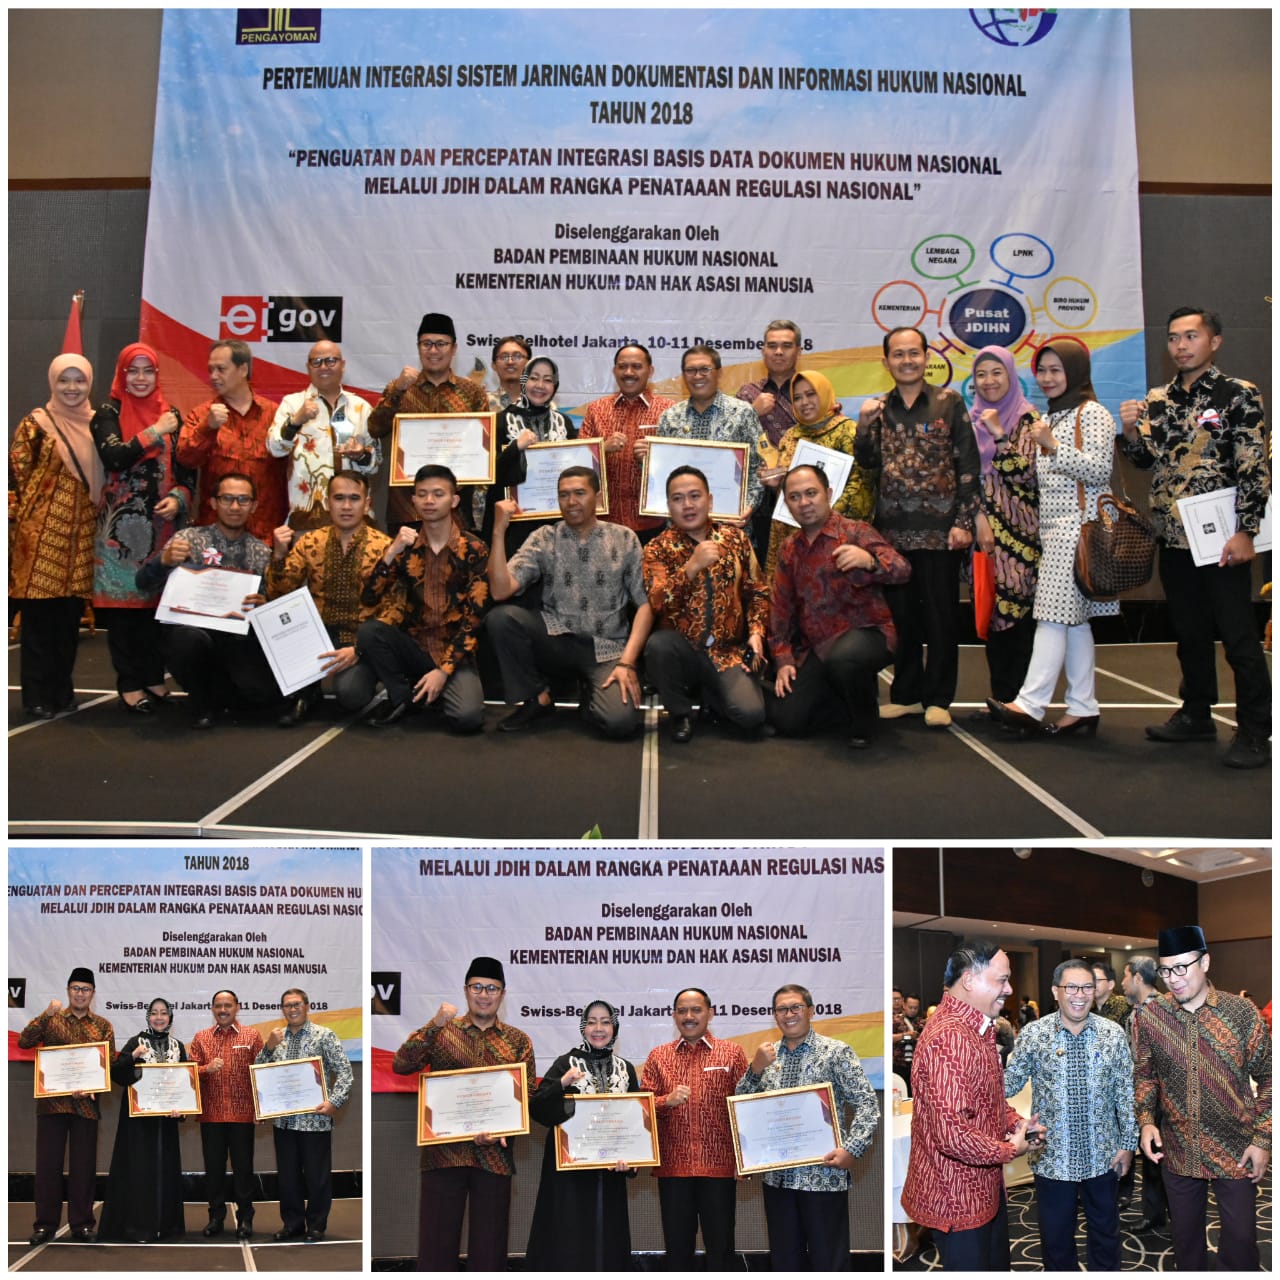 Preview Pertemuan Integrasi Jaringan Dokumentasi dan Informasi Hukum (JDIH) Tahun 2018 dan Penerimaan Penghargaan JDIH Bagian Hukum Sekretariat Daerah Kota Bandung sebagai Anggota JDIH terbaik III Ka